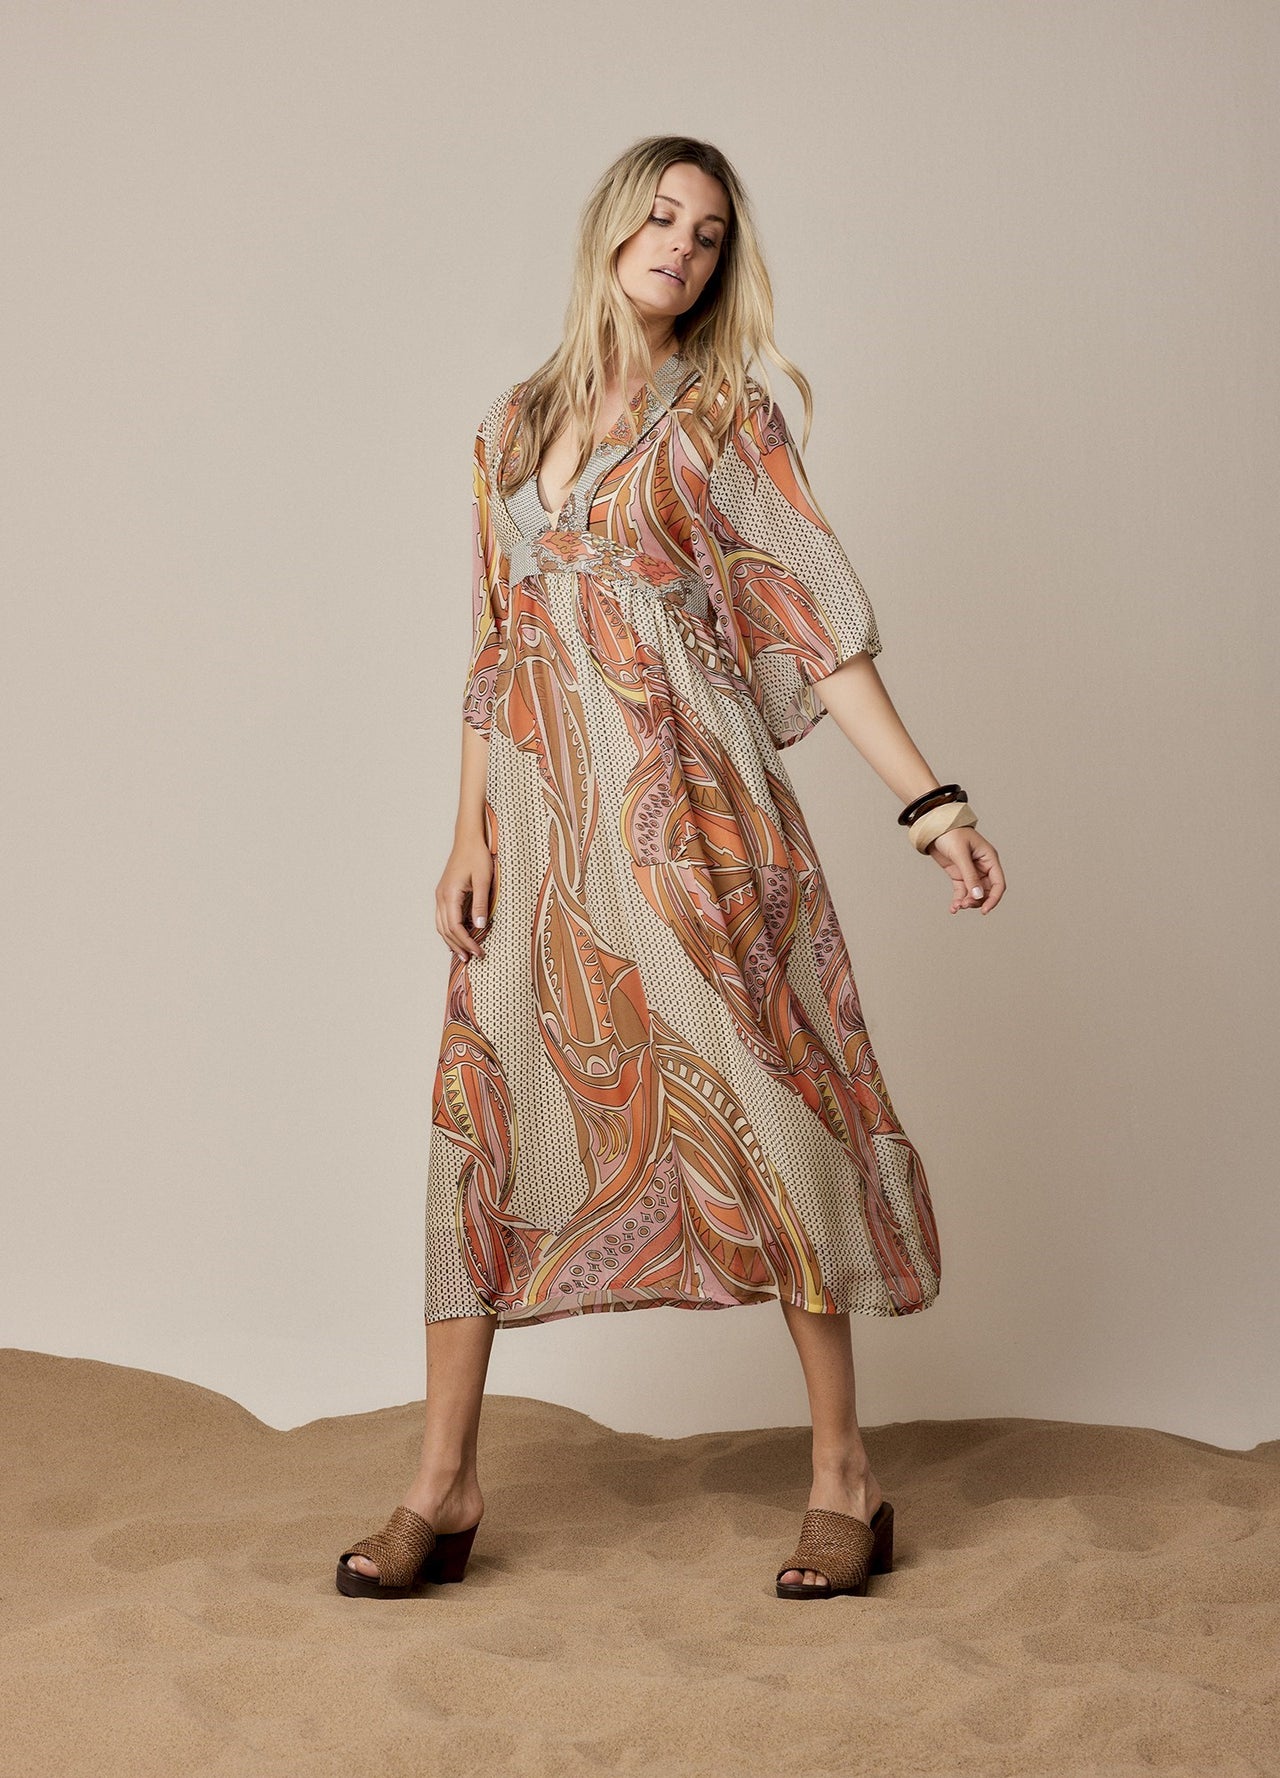 Summum Bohemian Print Dress - Multicolour